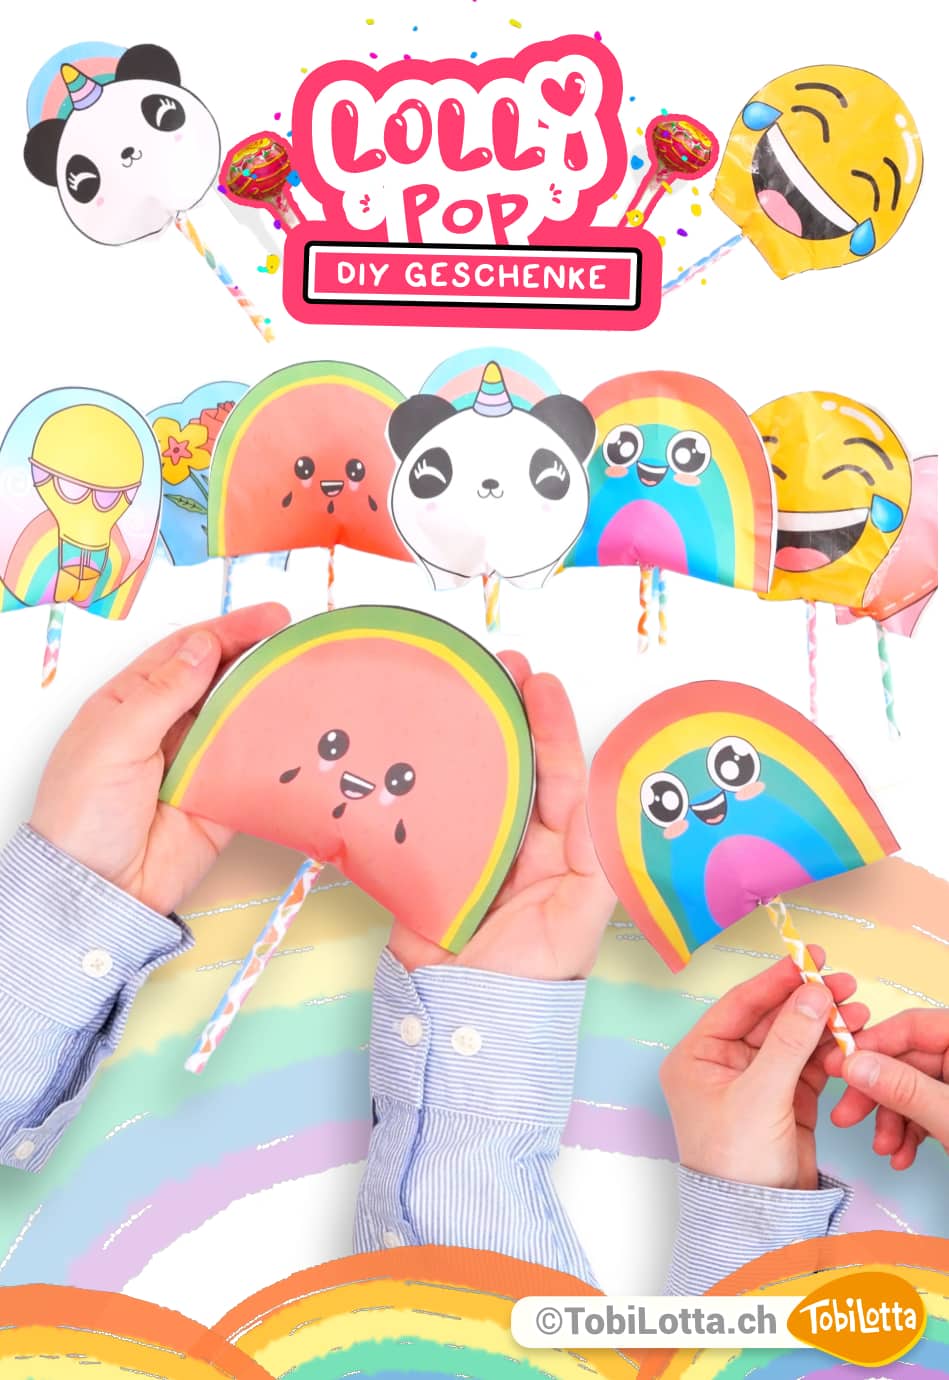 12280 Lollipop DIY Geschenkideen Basteln mit Kindern Muttertag Geburtstag Party Süssigkeiten Nachhaltig Emoji Panda